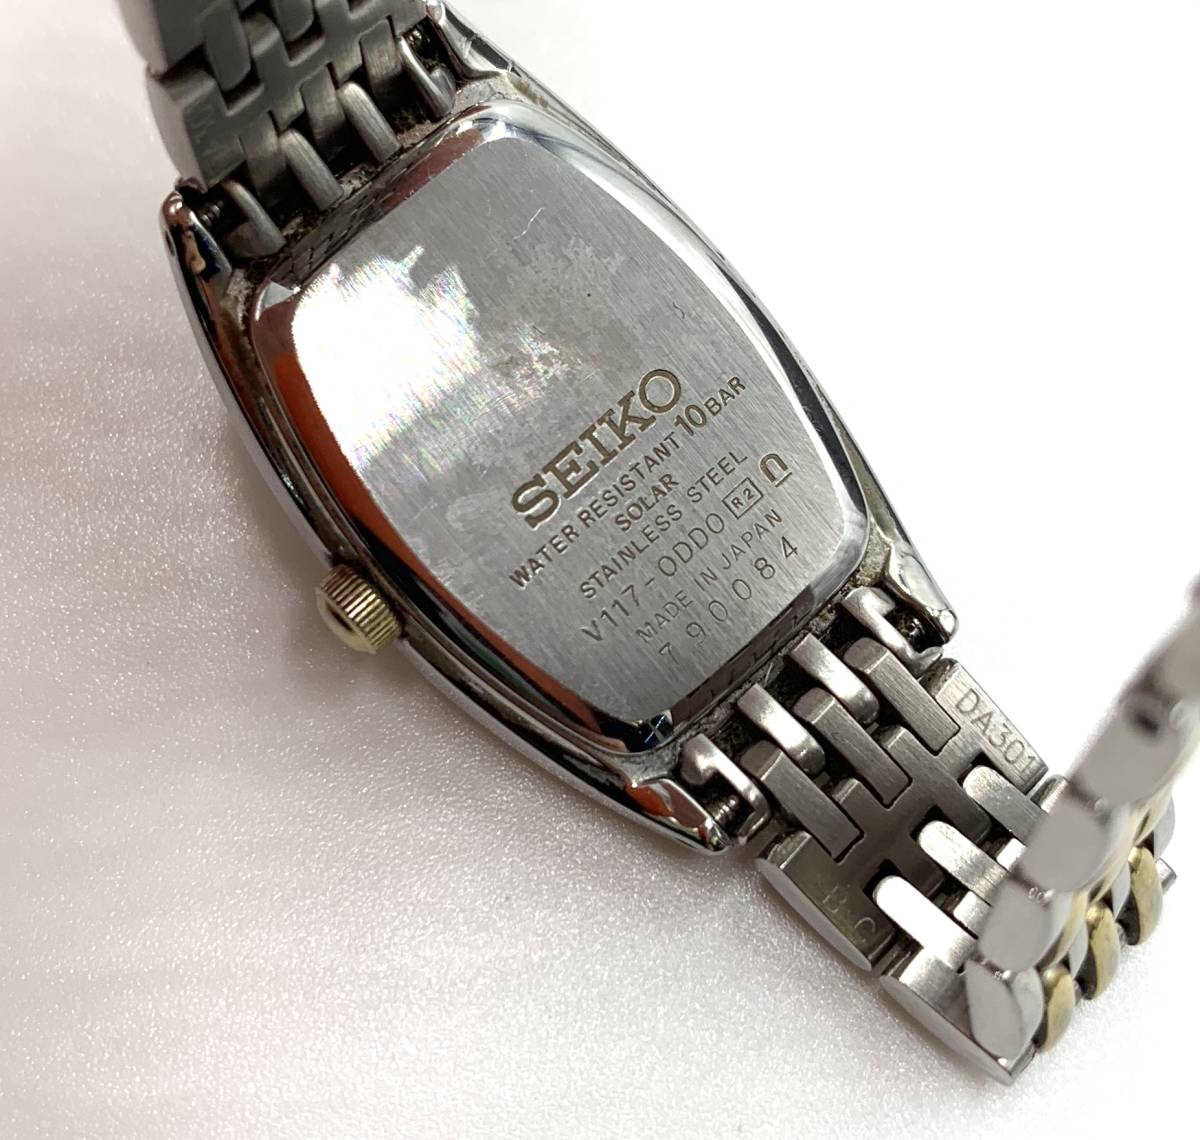 SEIKO Seiko Exceline ракушка циферблат 10 отметка diamond солнечный часы 